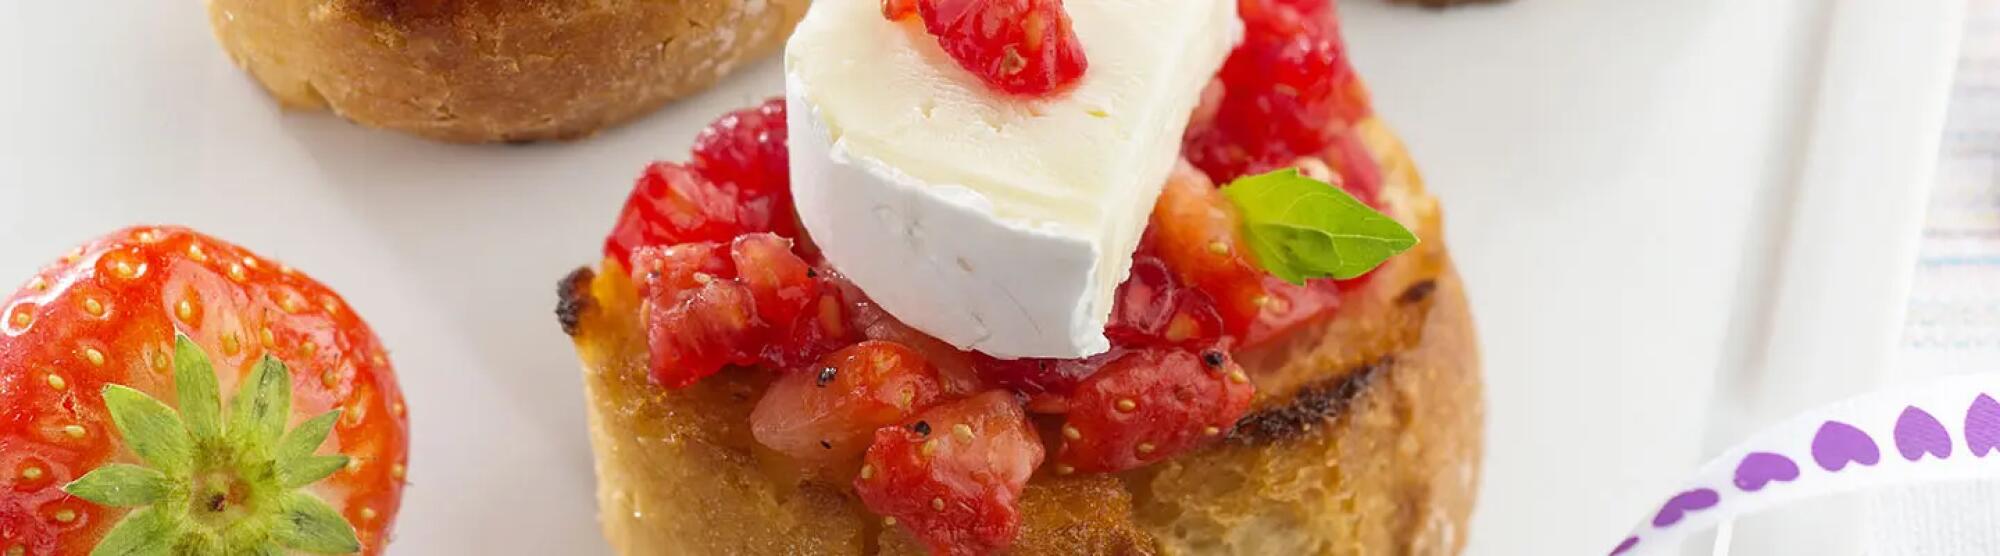 Recette : Tartines fraises framboises basilic et fromage